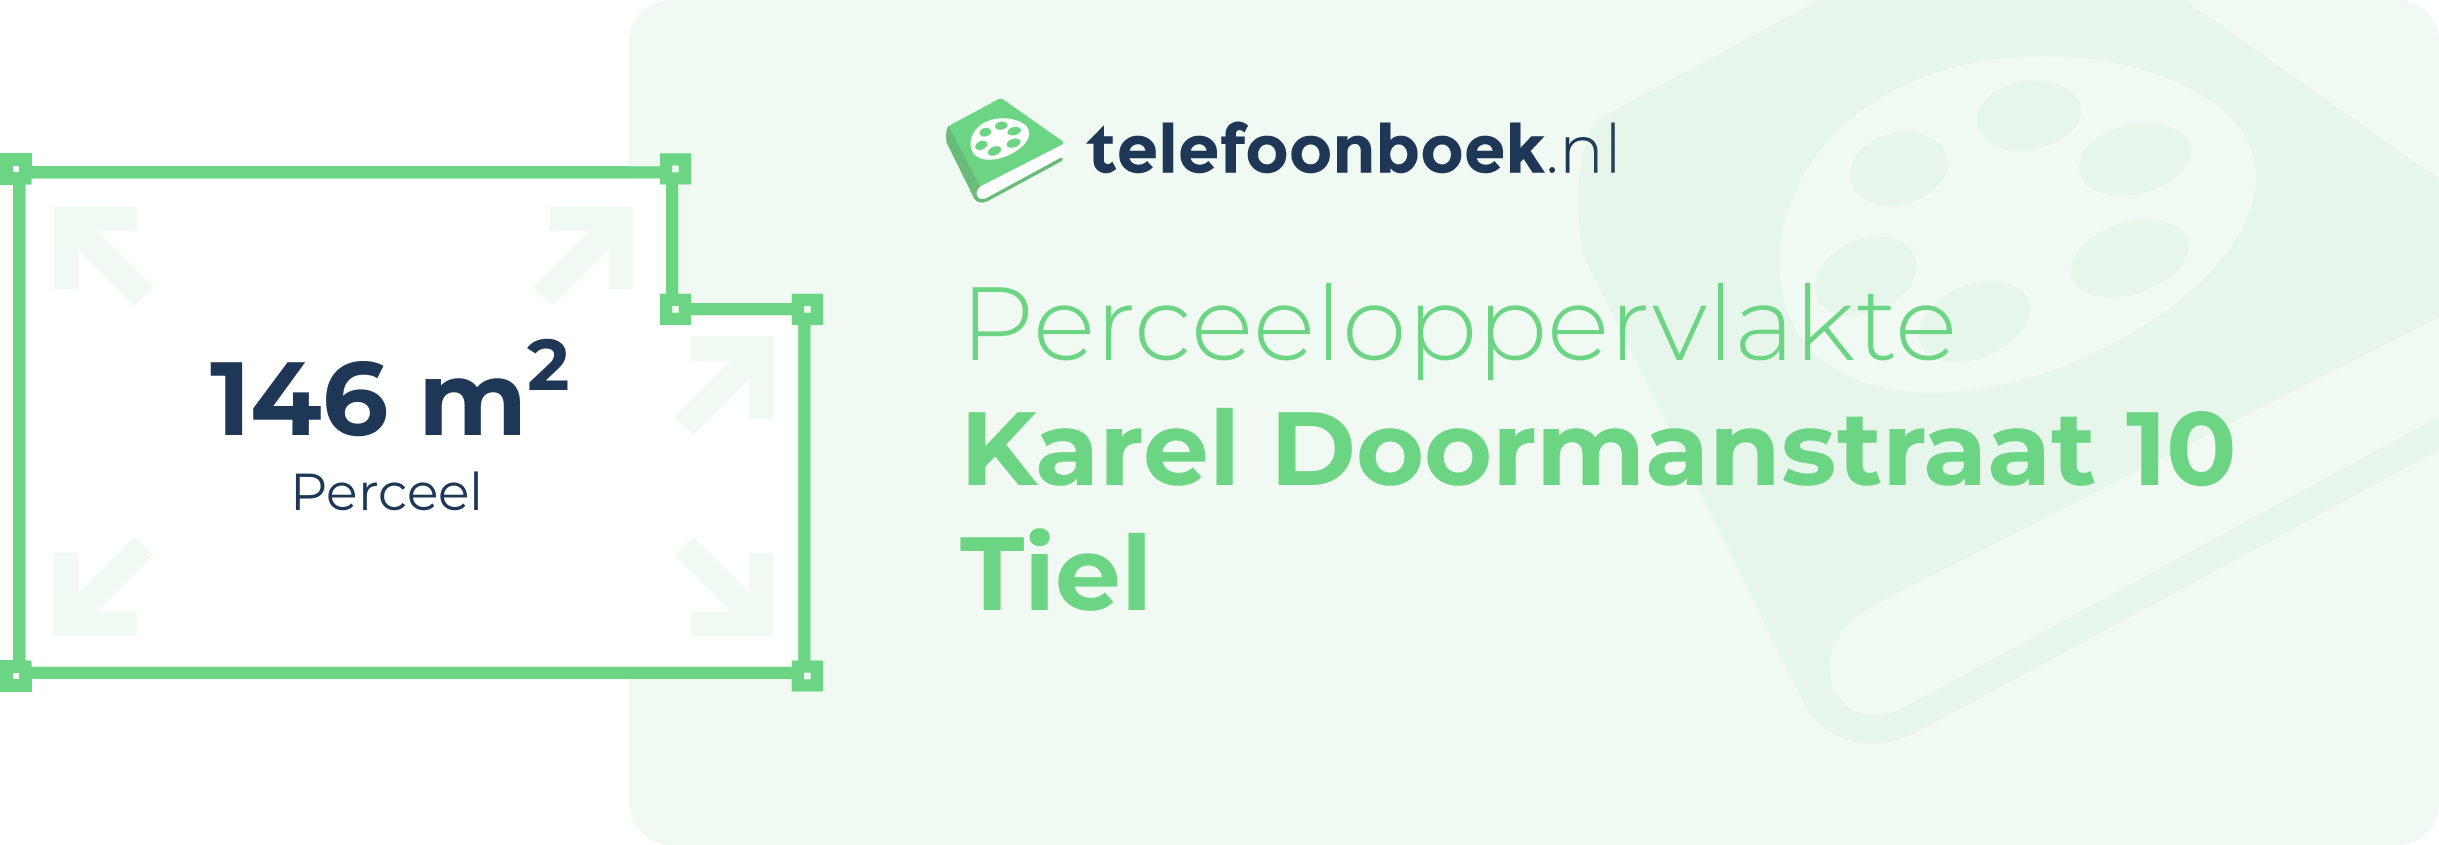 Perceeloppervlakte Karel Doormanstraat 10 Tiel